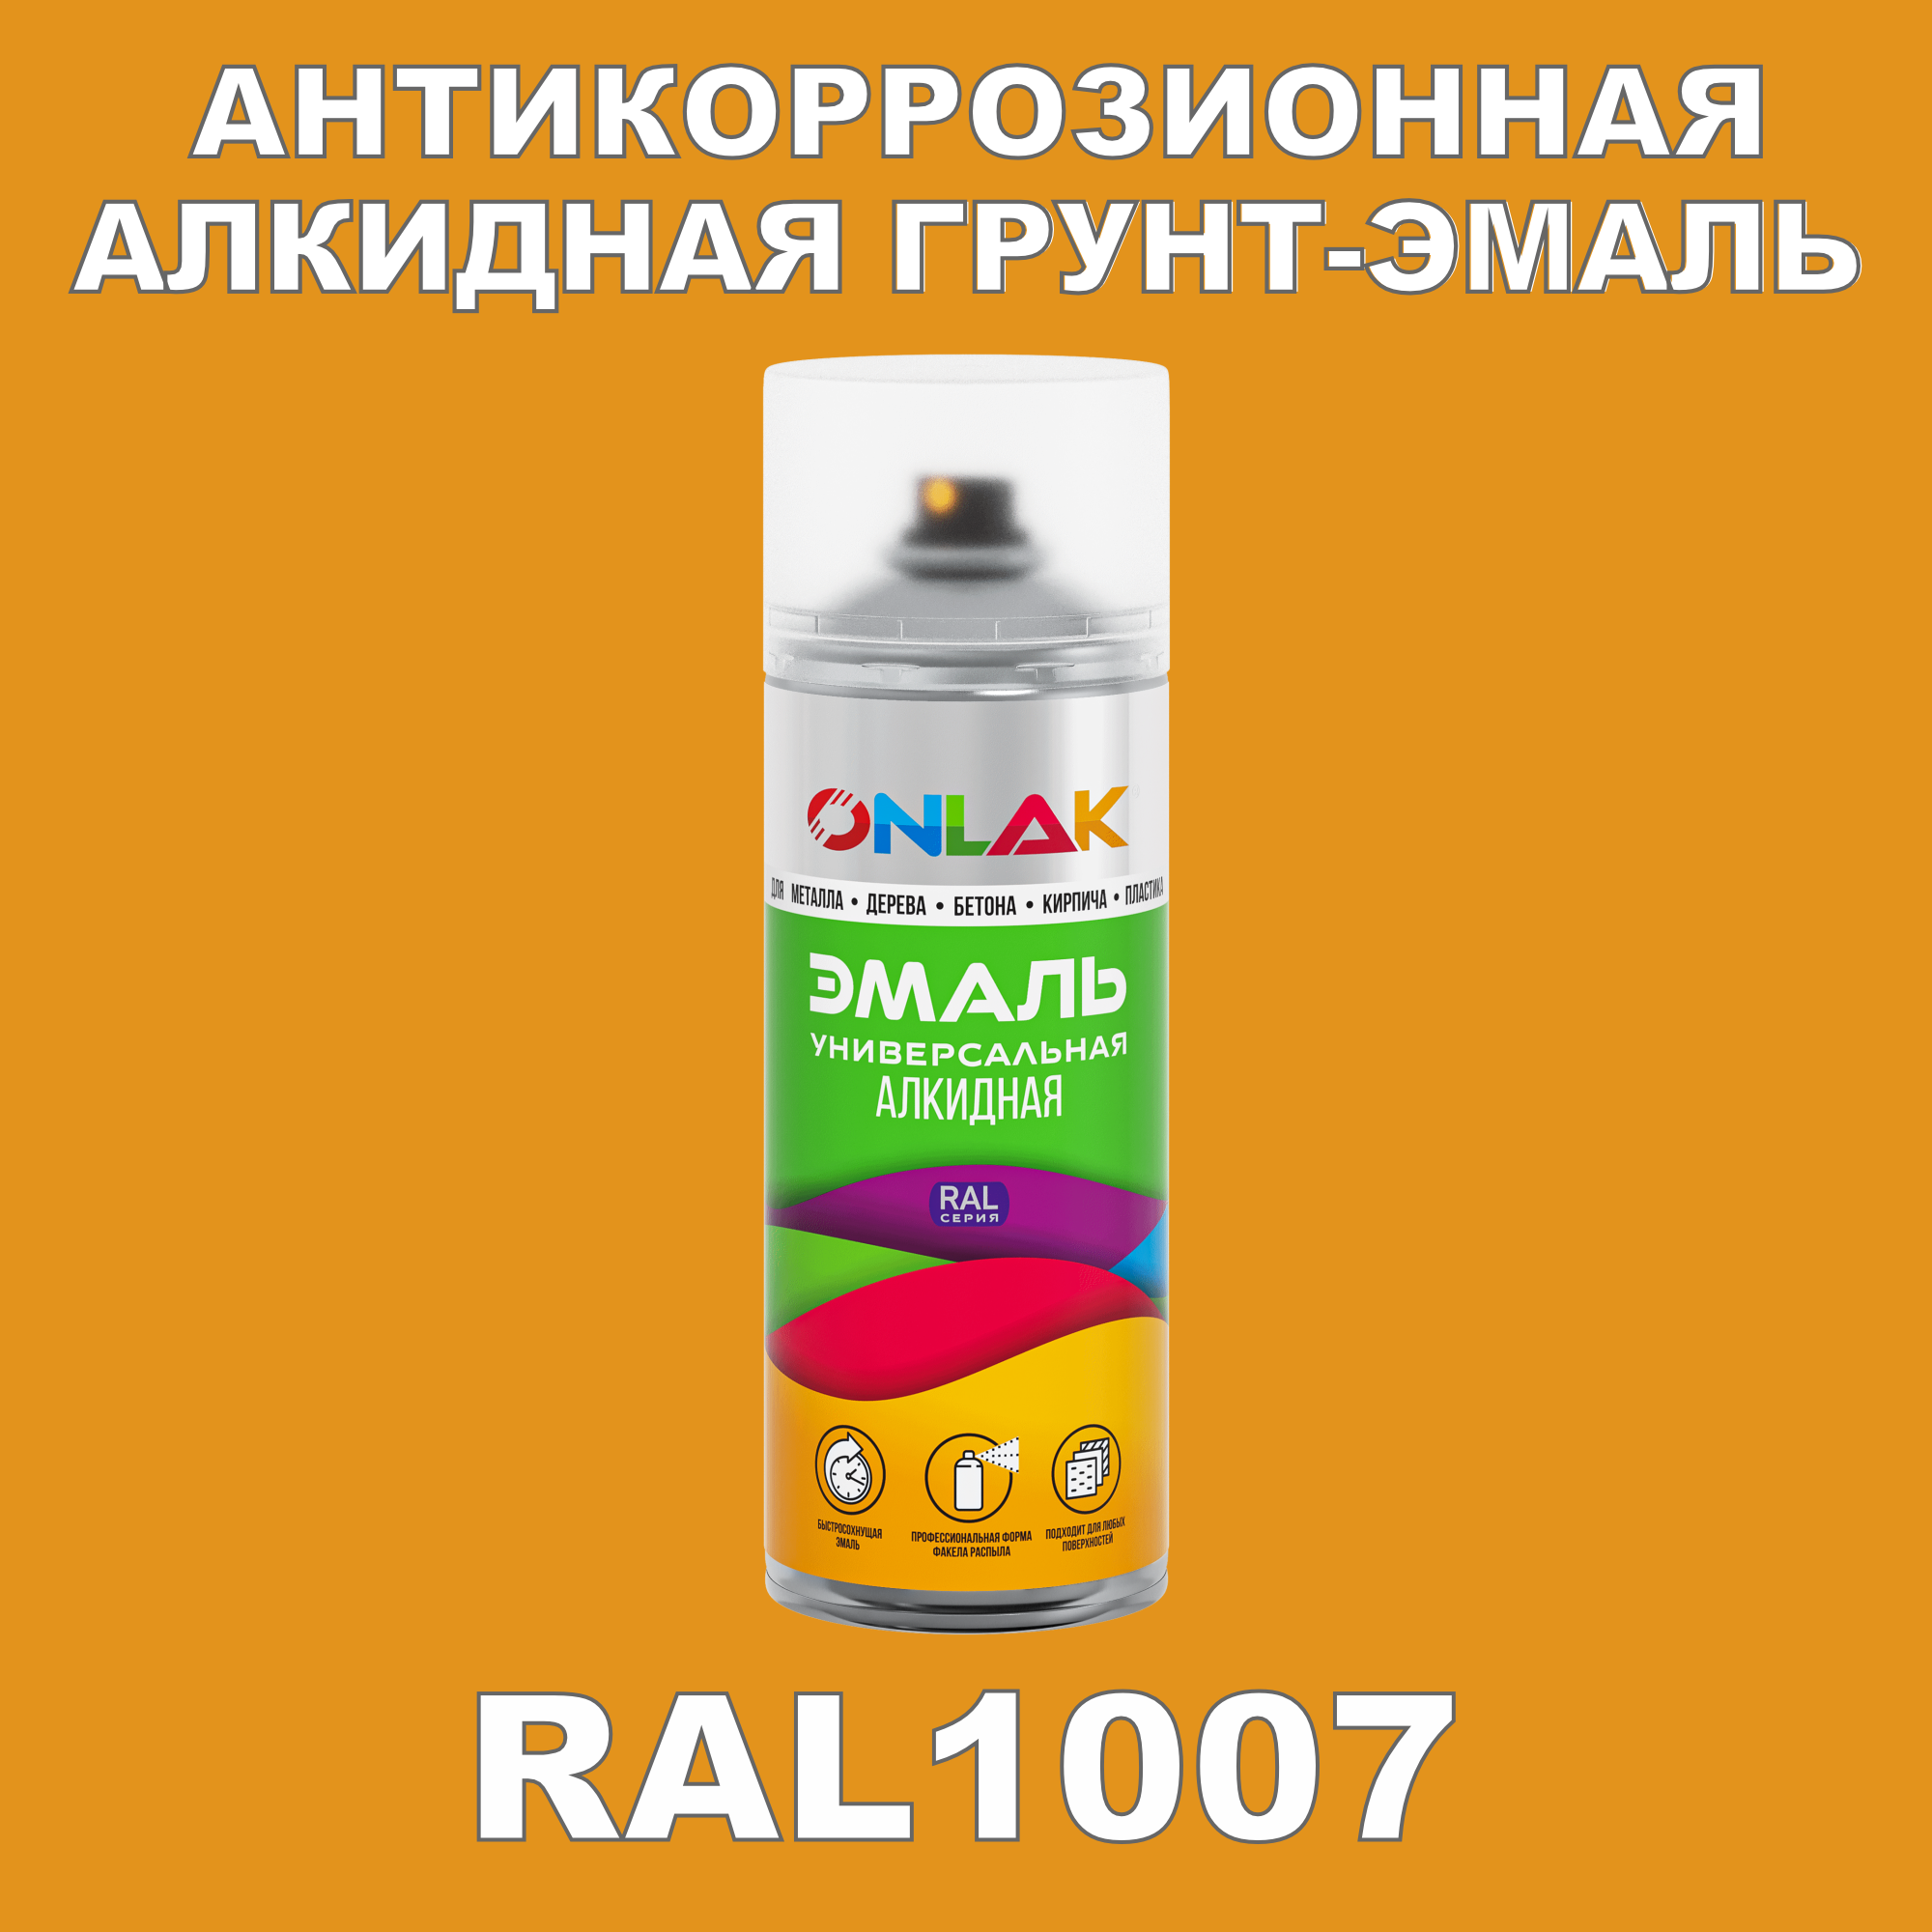 Антикоррозионная грунт-эмаль ONLAK RAL1007 полуматовая для металла и защиты от ржавчины